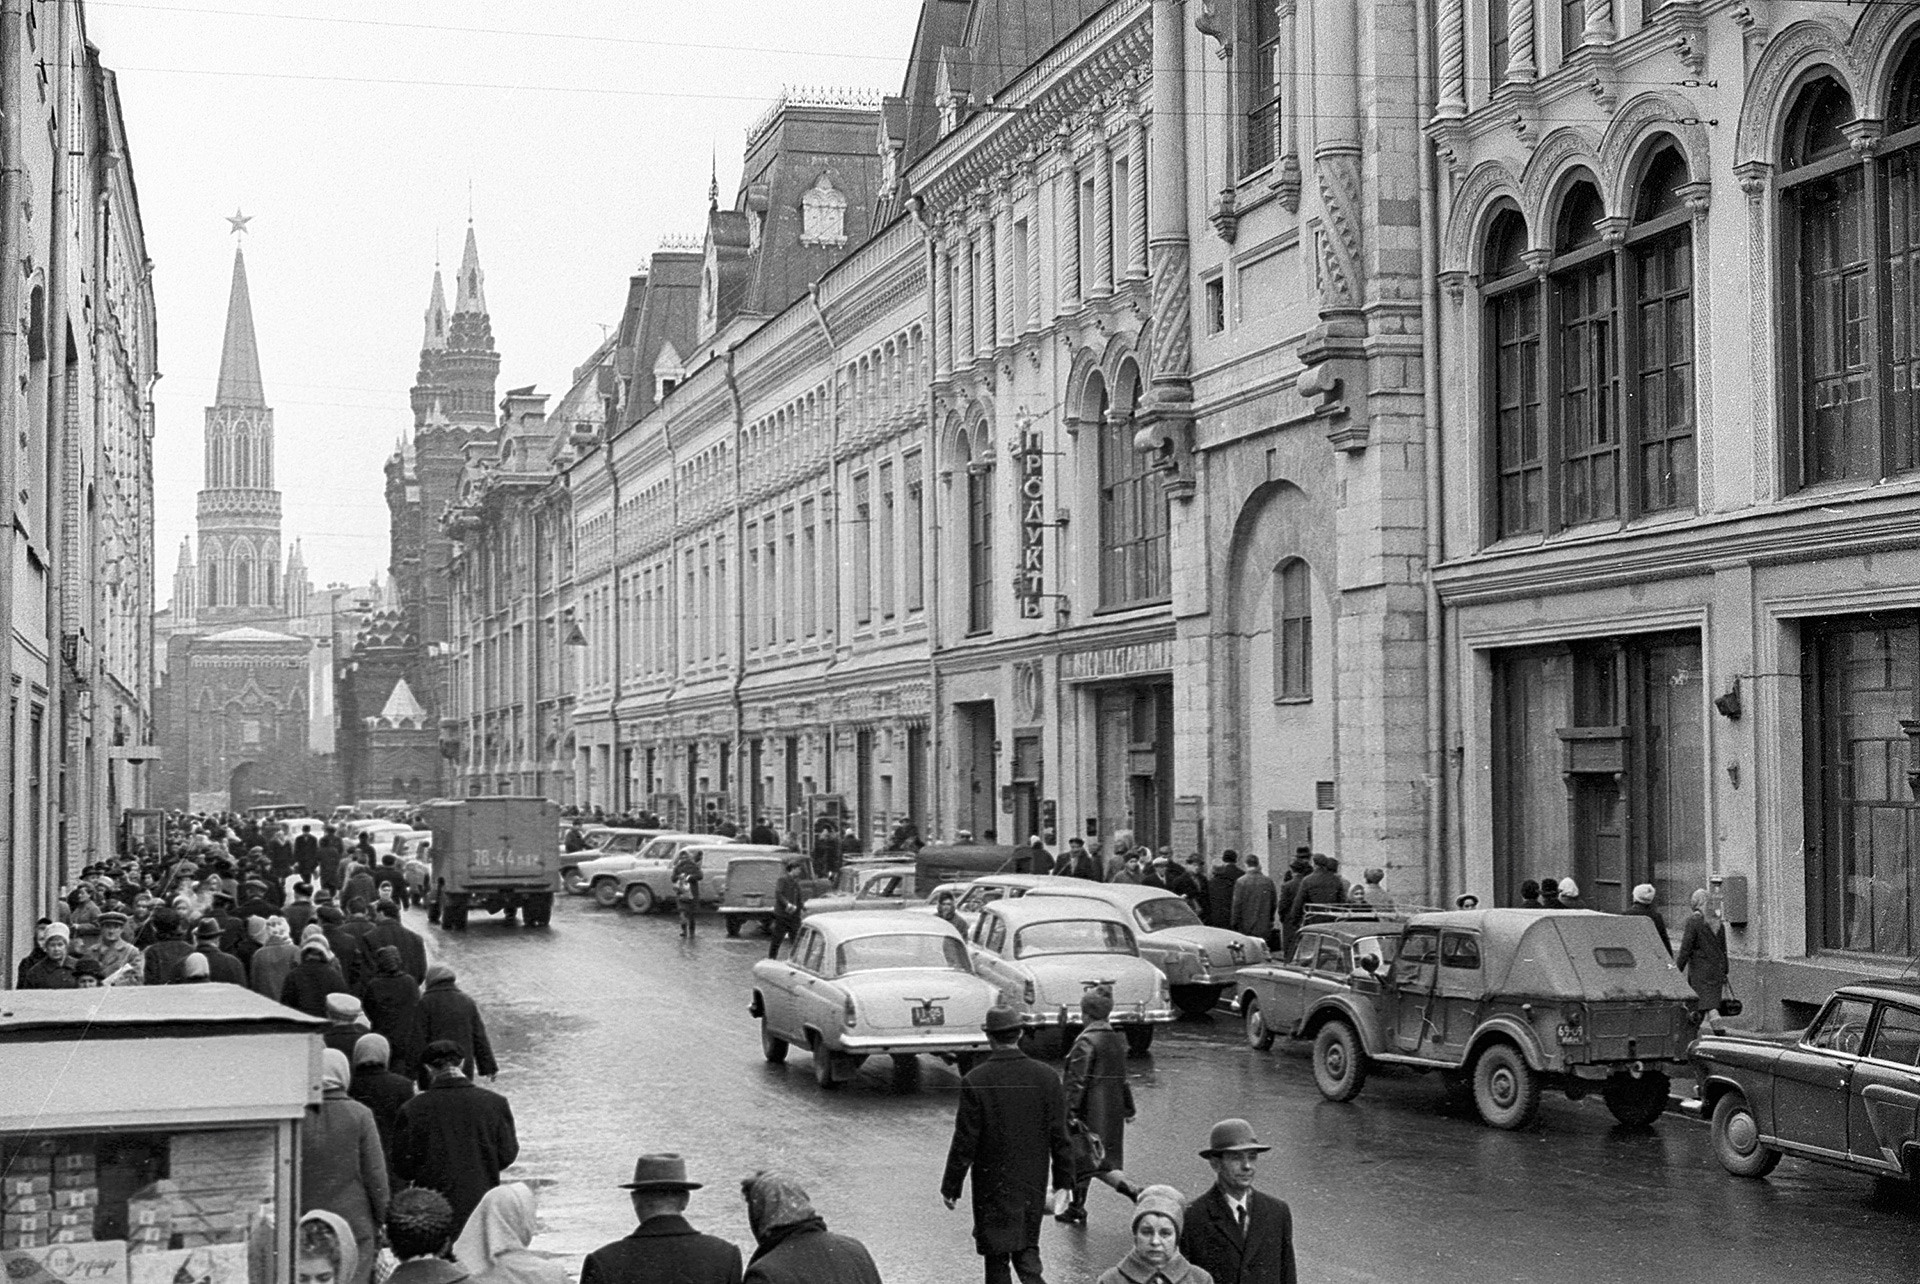 Nikoljska ulica, 1968.

